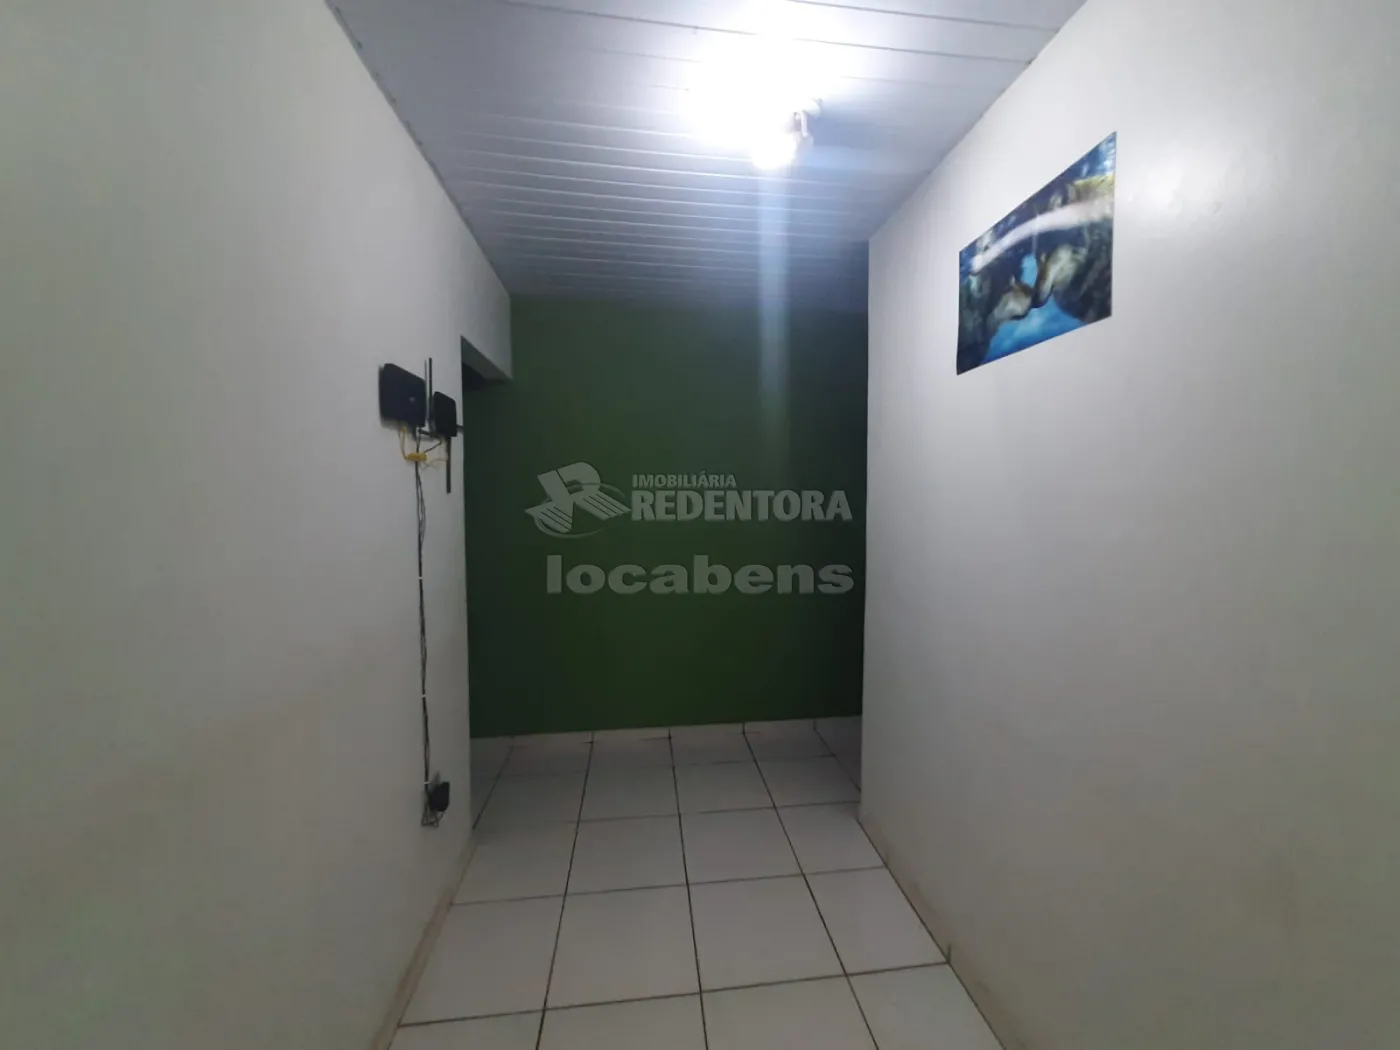 Alugar Casa / Padrão em São José do Rio Preto apenas R$ 1.200,00 - Foto 5